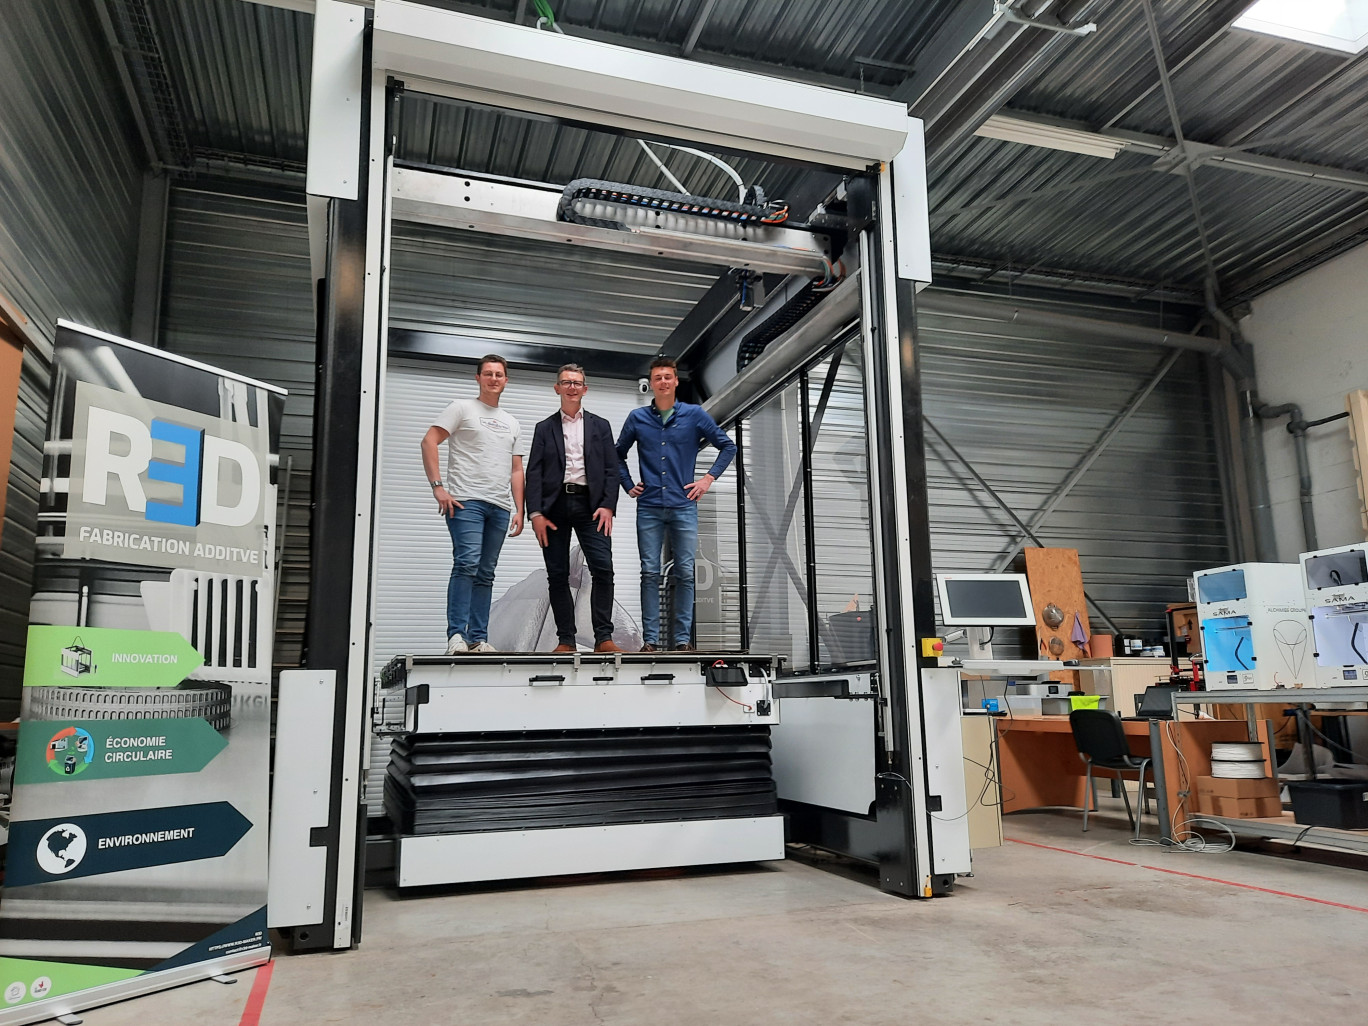 Les 3 salariés de l’entreprise R3D sont fiers d’accueillir dans leur atelier, la plus grande imprimante 3D plastique de l’Hexagone. © Aletheia Press/L.Péron